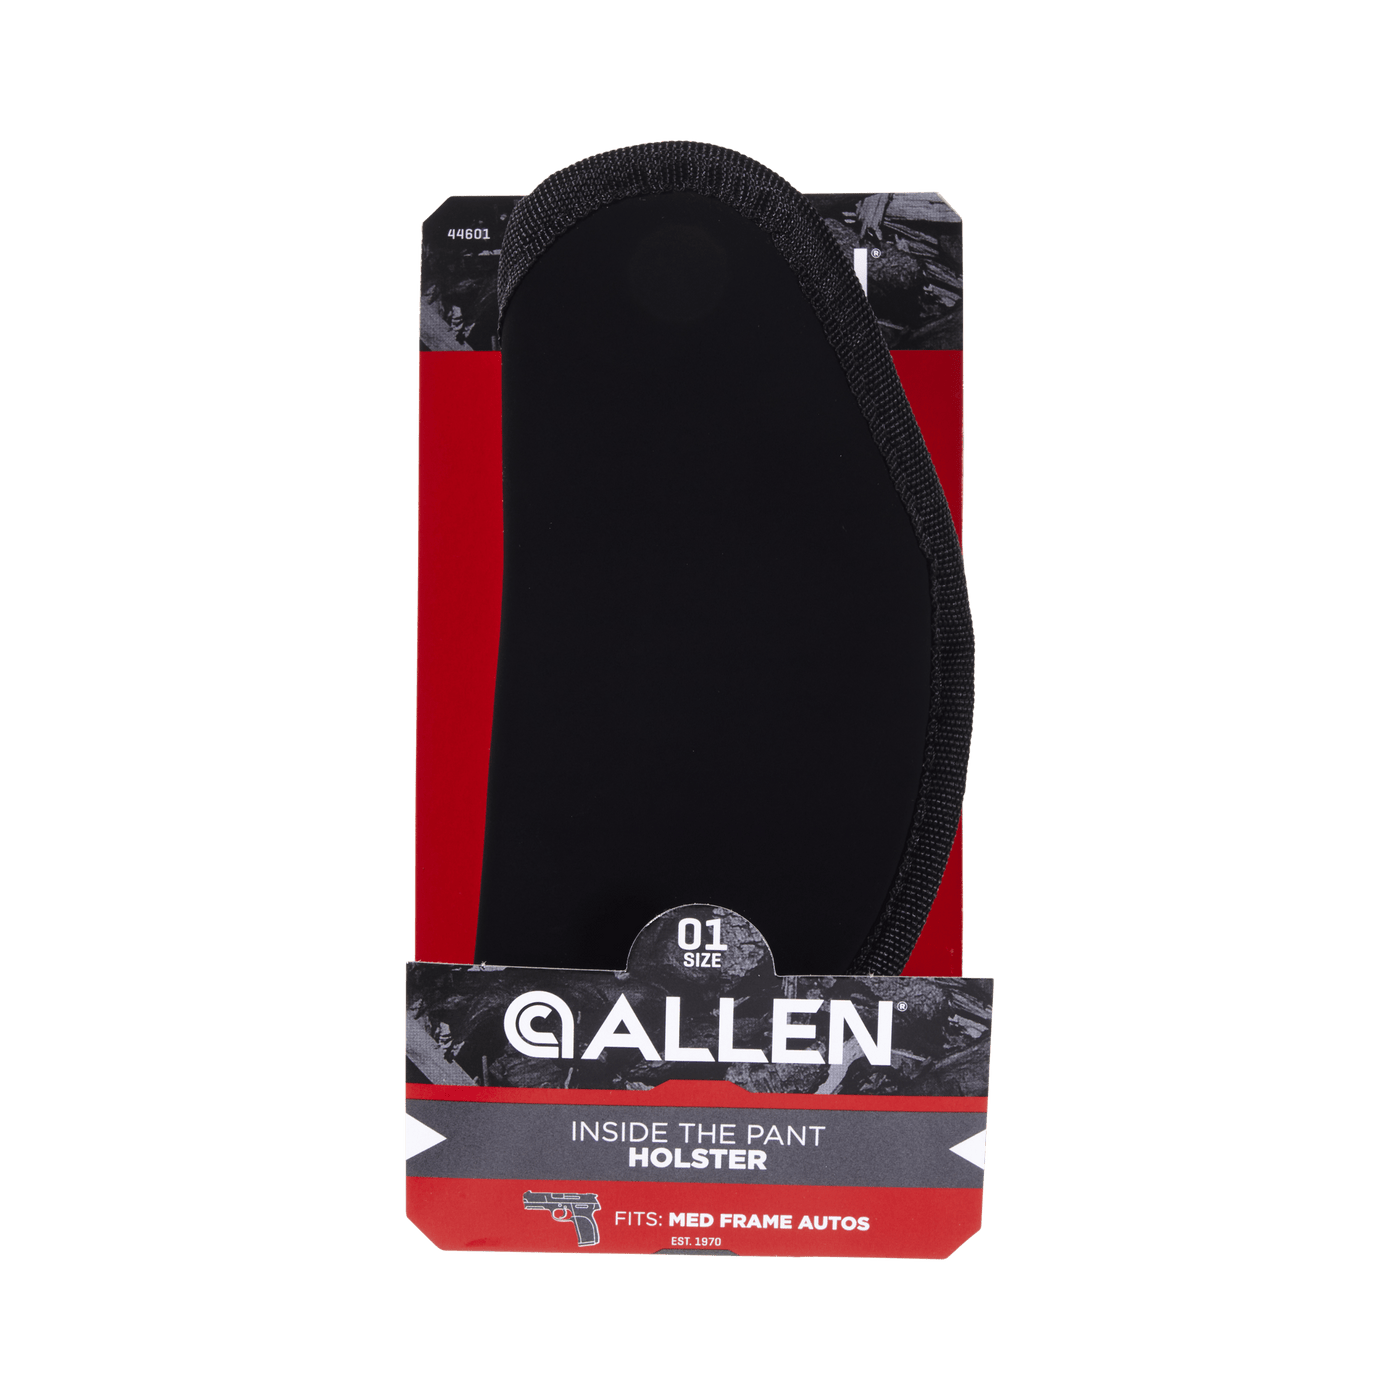 Allen Allen Inside Pant Holster Black Size 01 Firearm Accessories